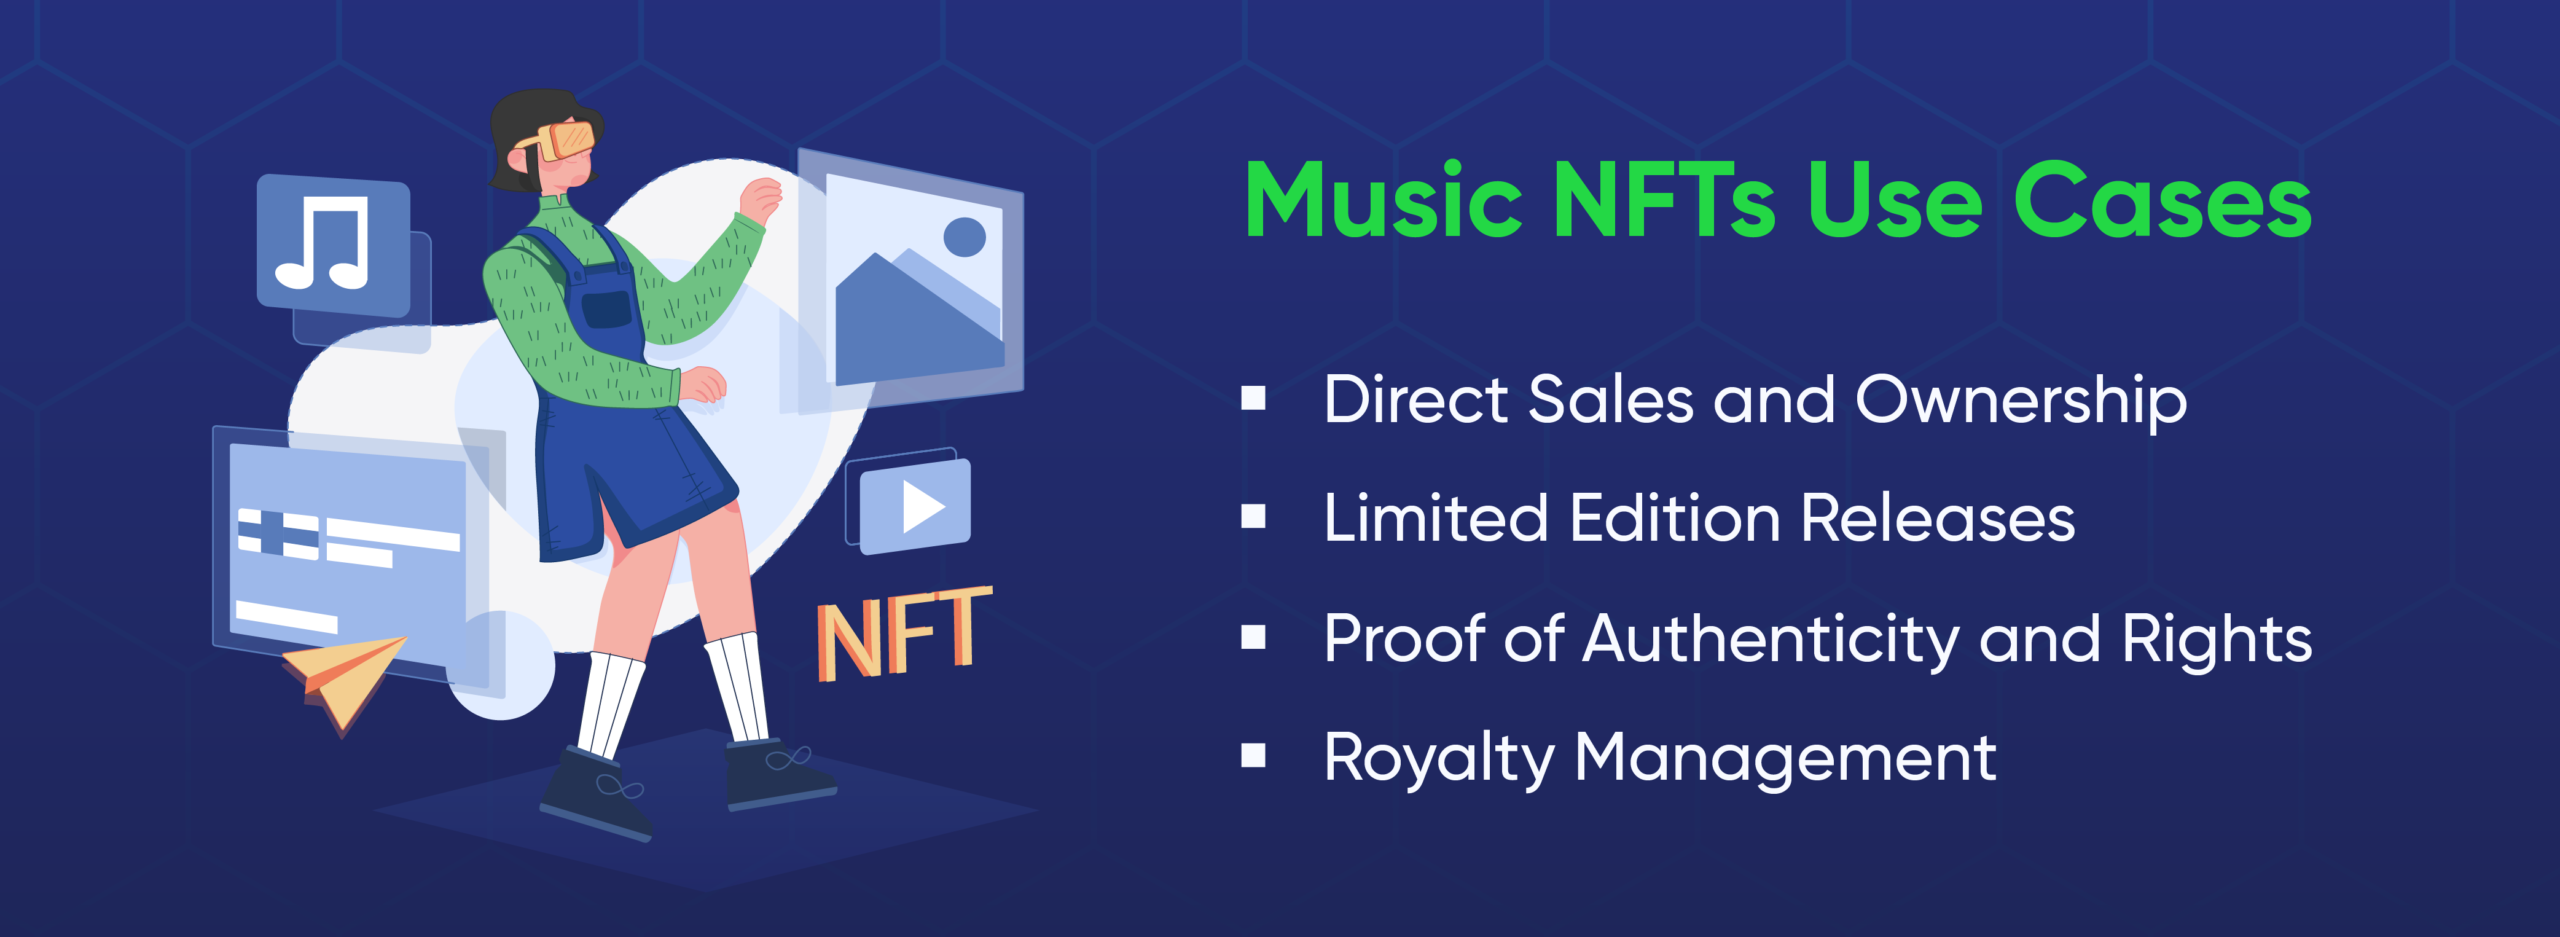 Music NFTs